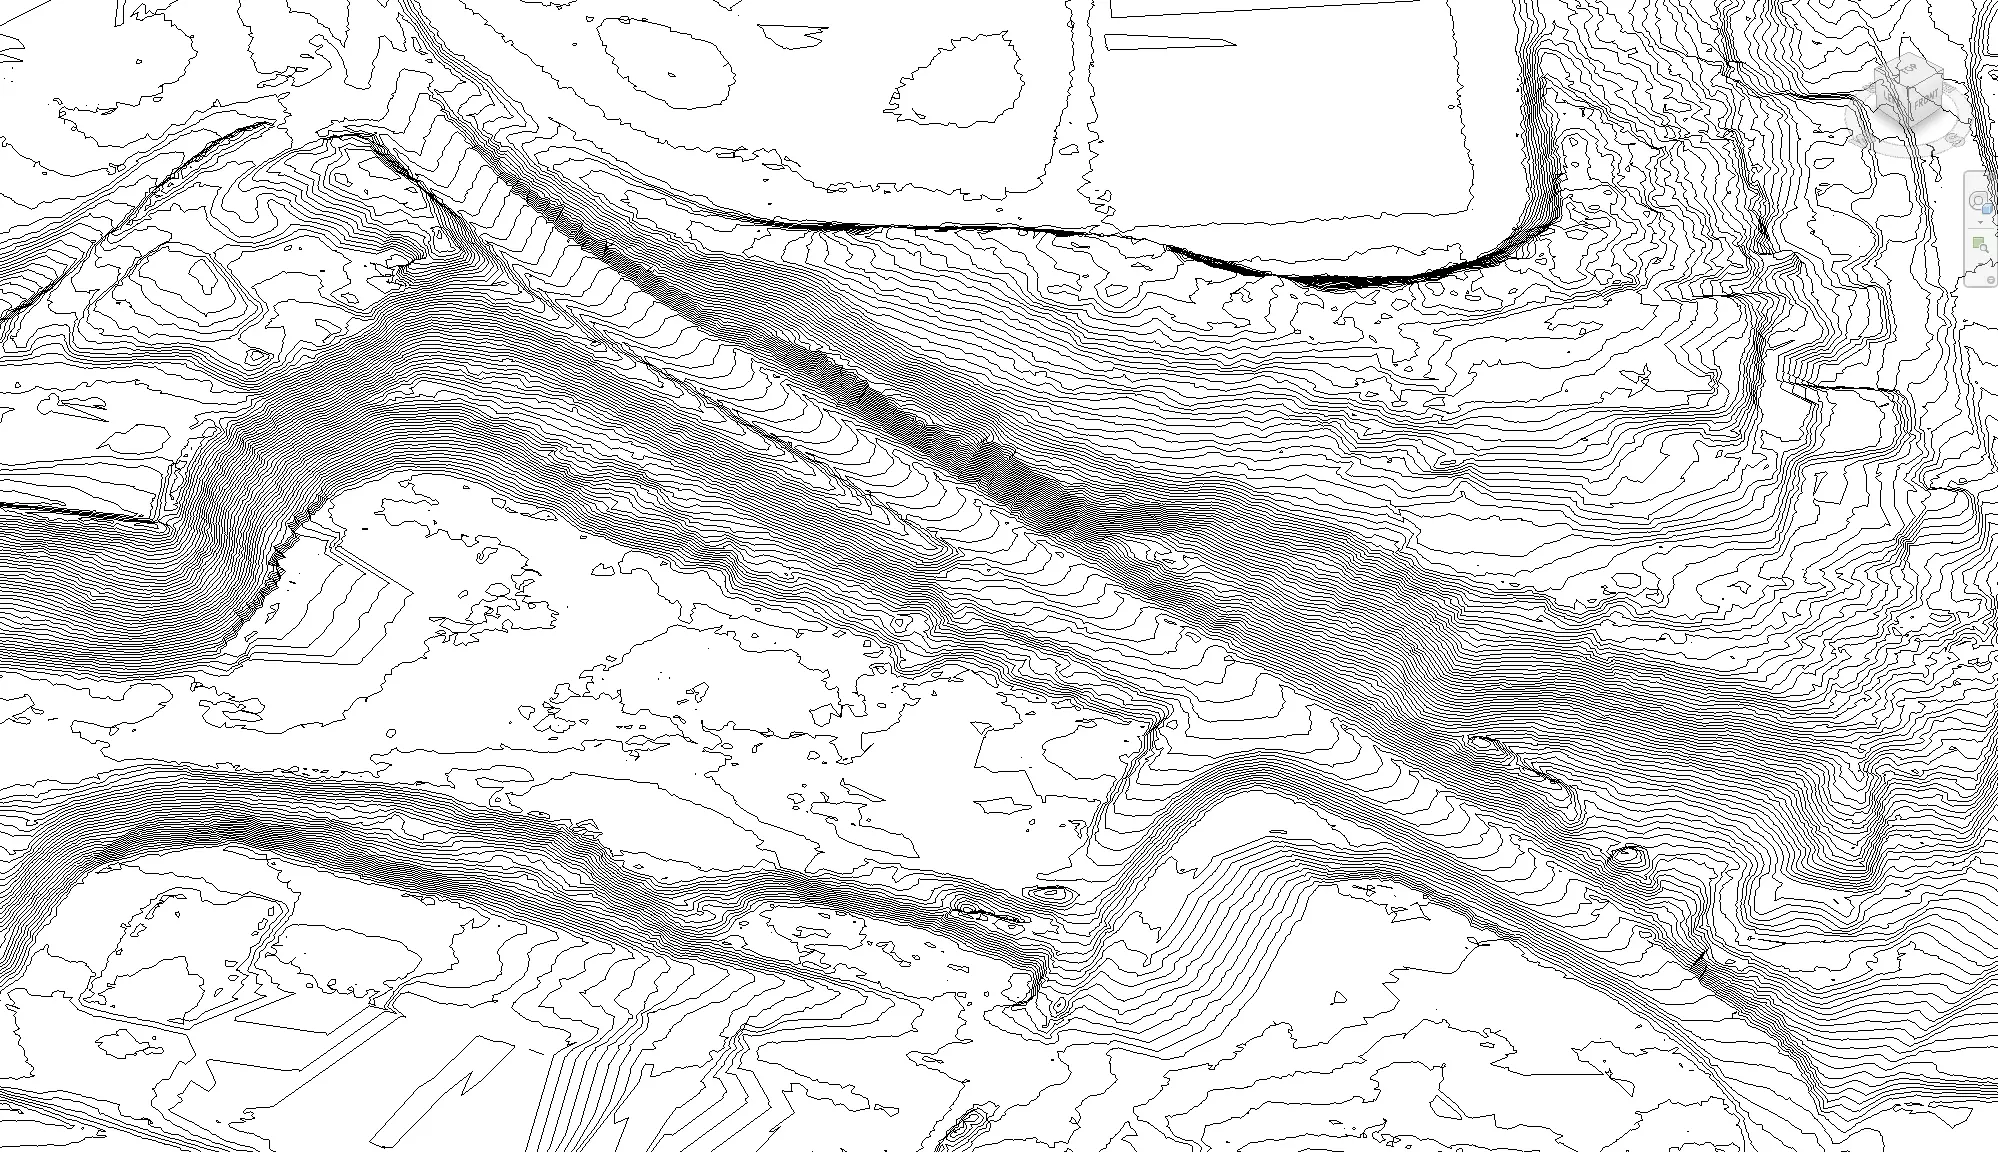 Revit terrain generated from Lidar